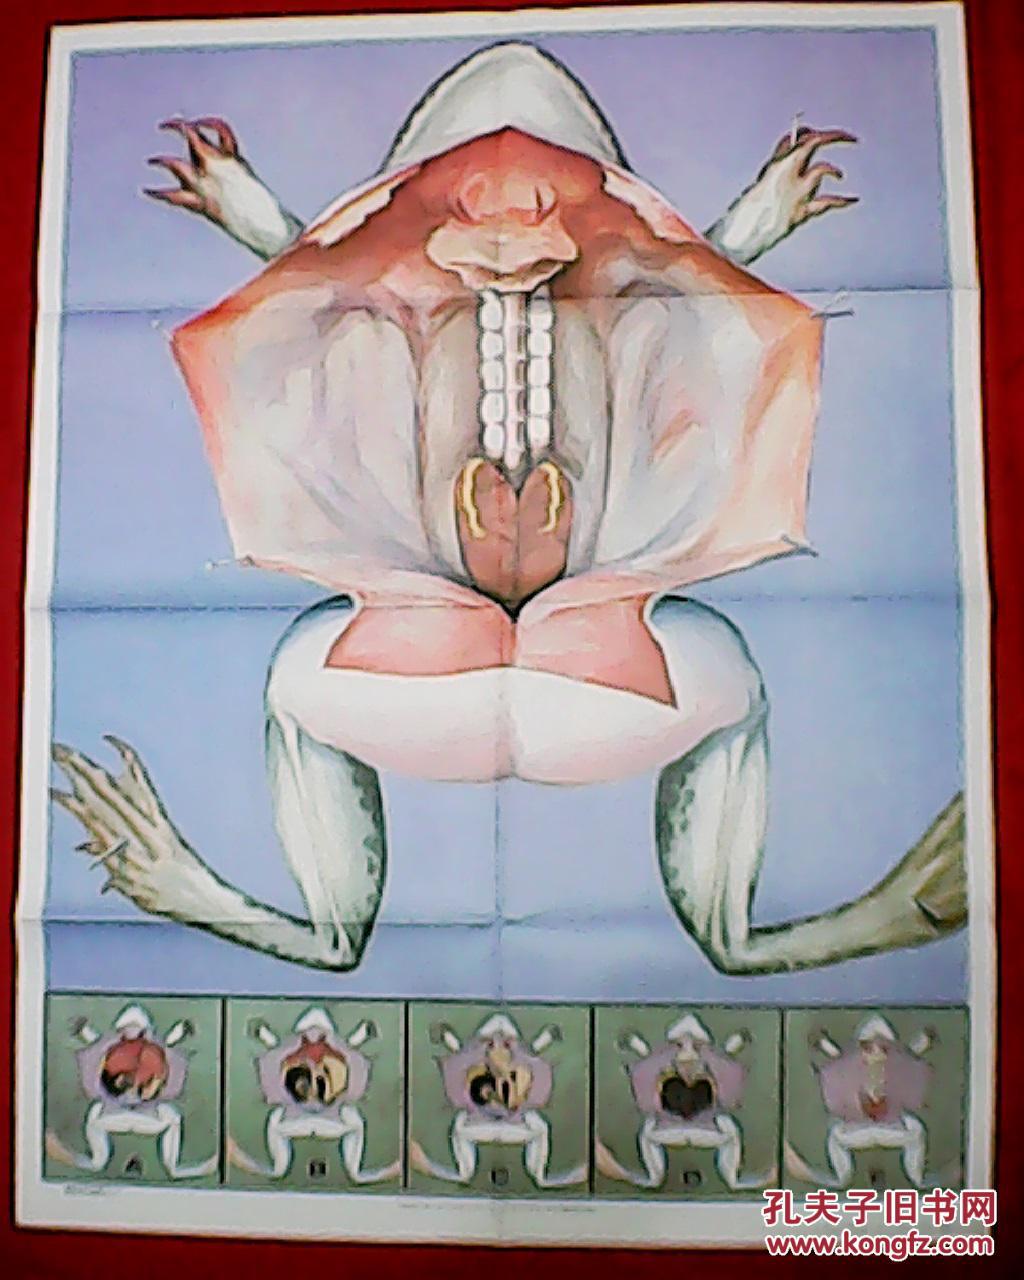 蛙的泄殖系统图图片